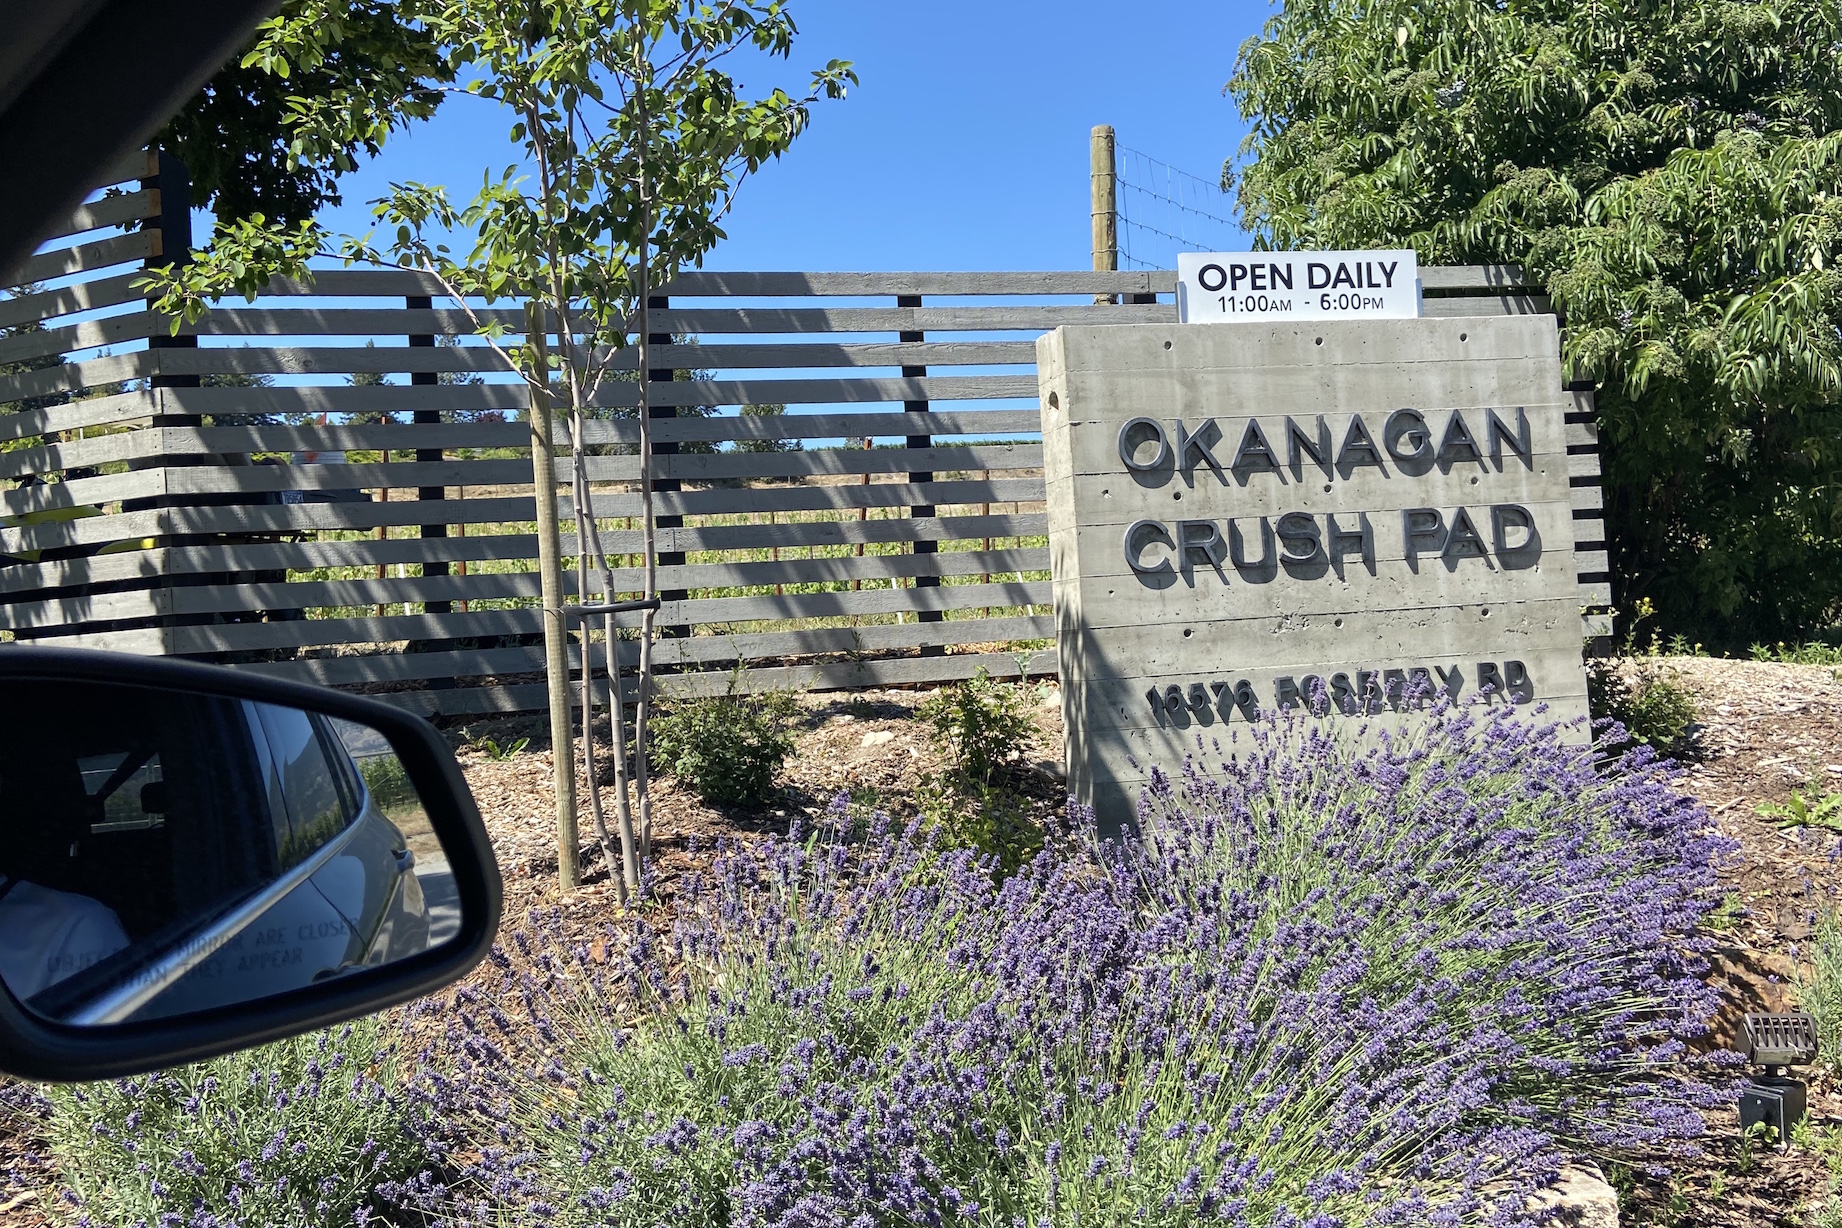 Okanagan Crush Pad 